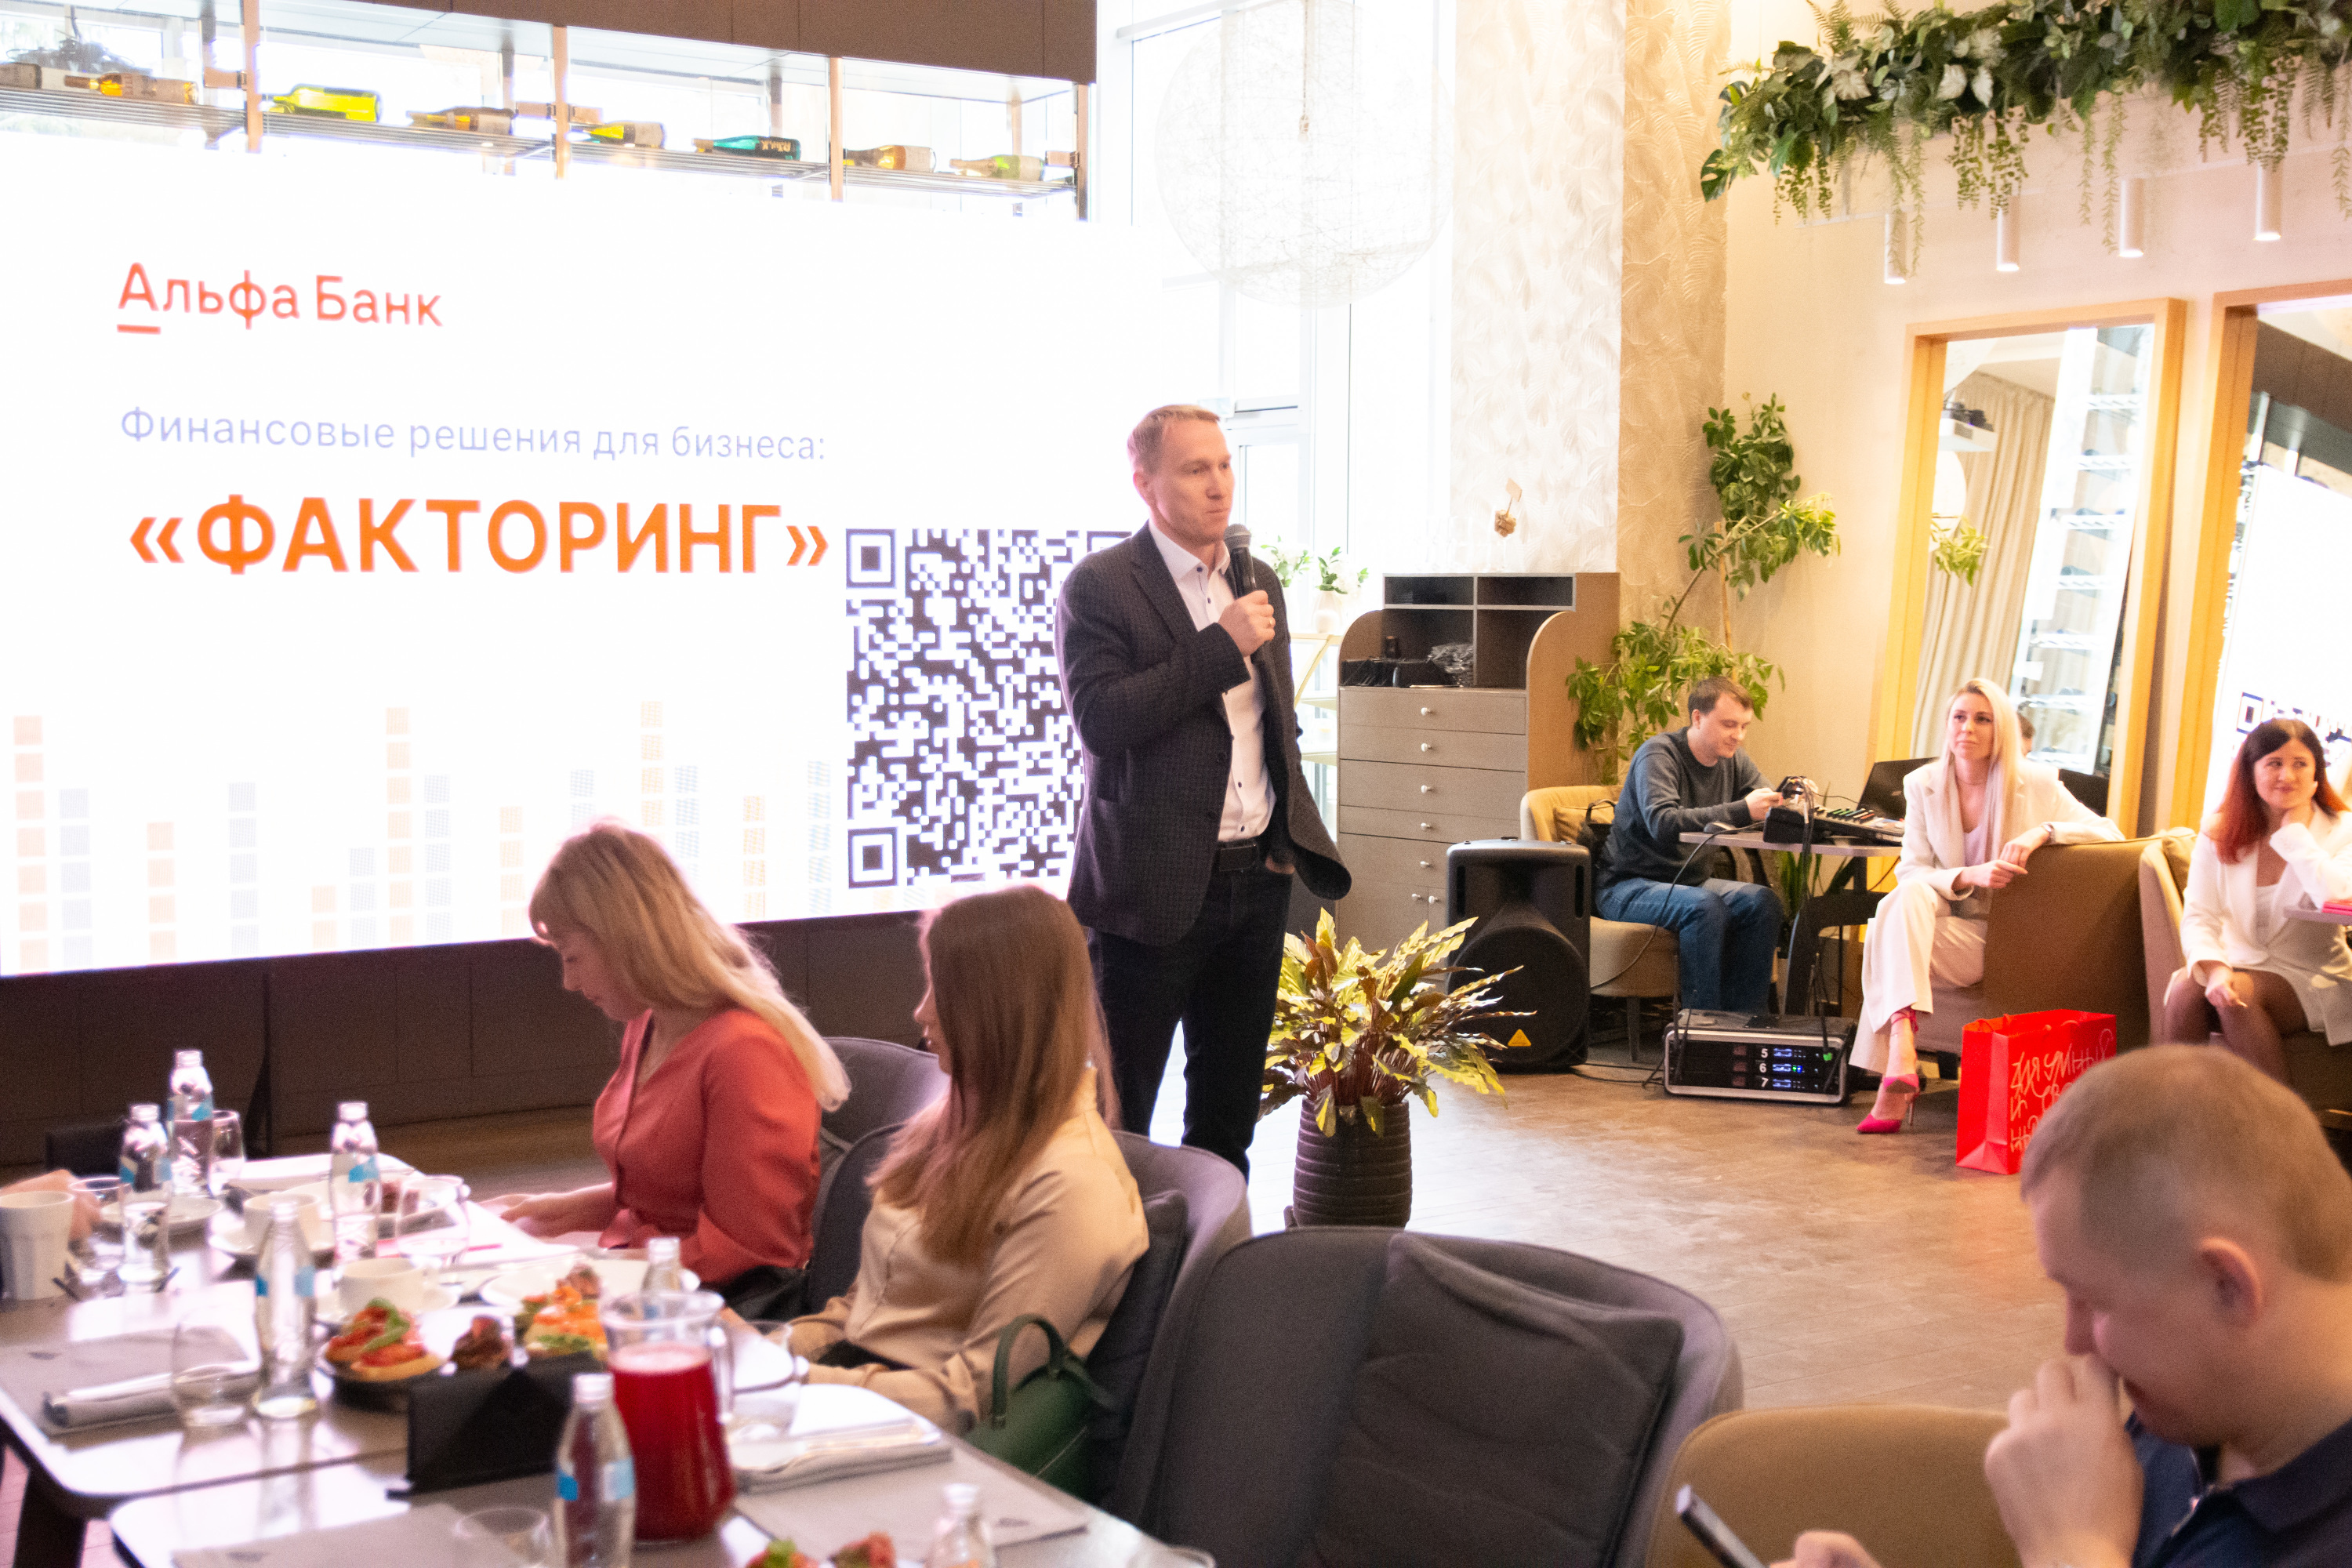 Андрей Фишер, региональный управляющий Альфа-Банка в Новосибирске области, рассказал о нюансах факторинга